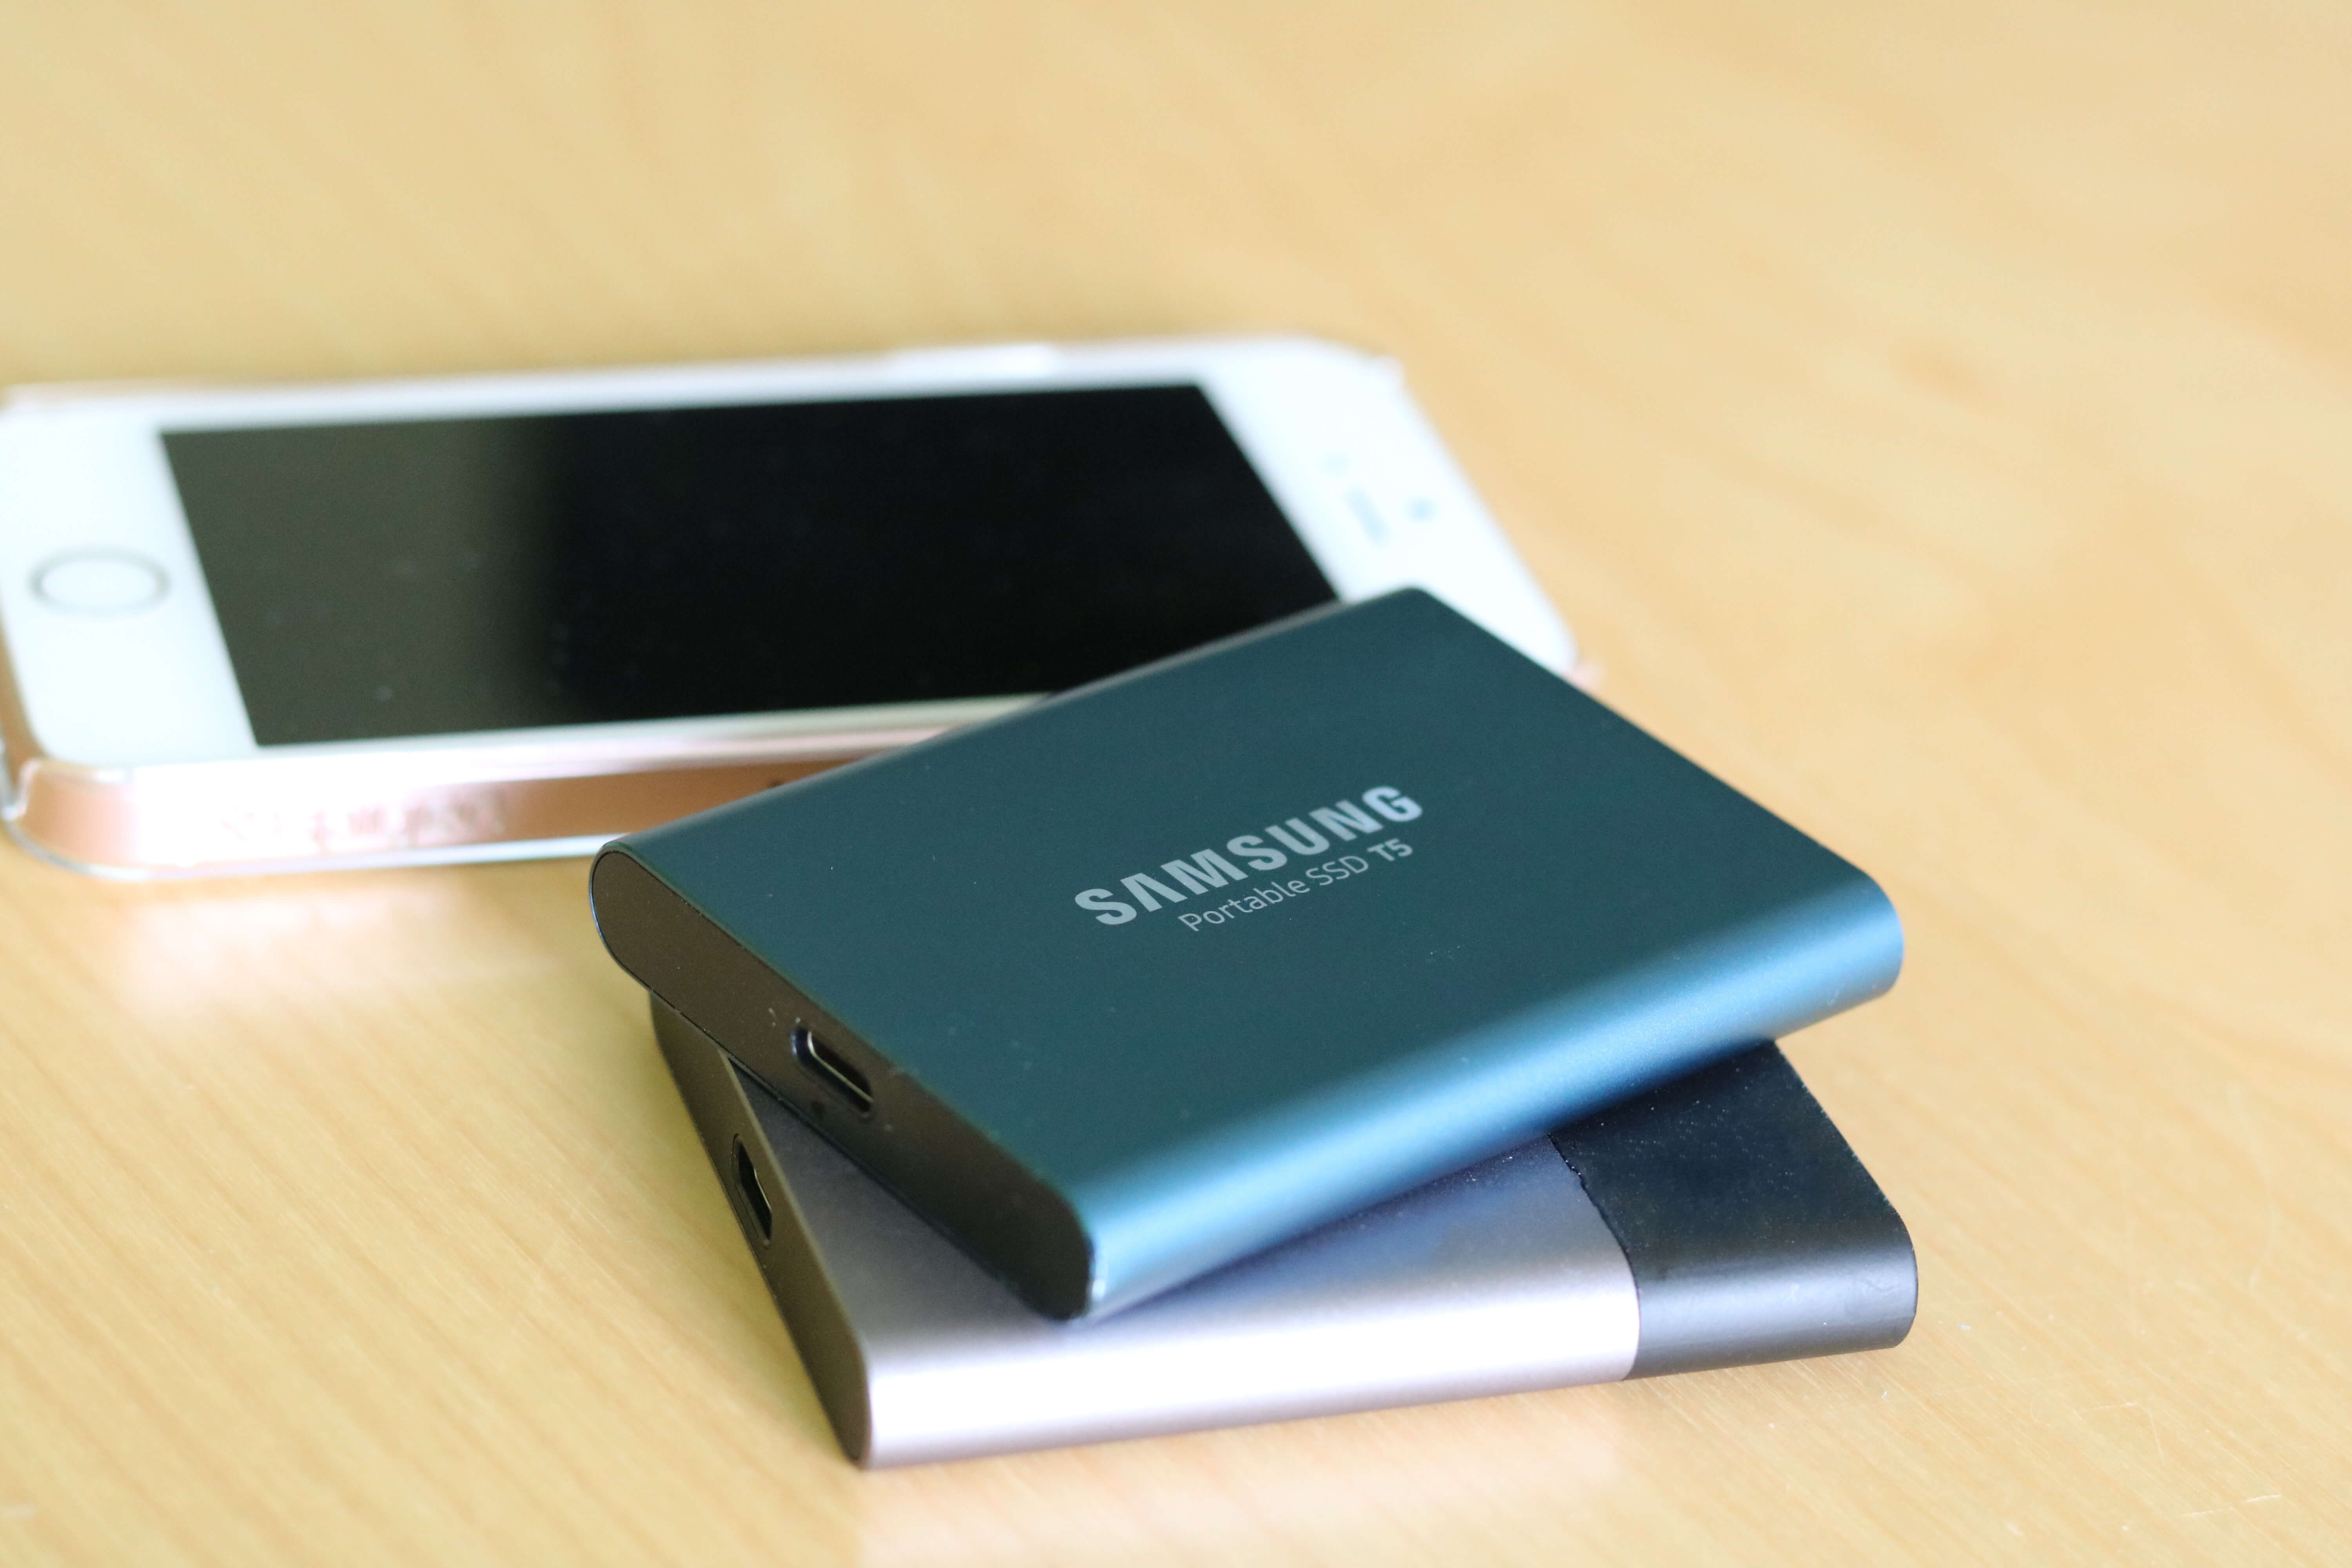 Mijn voorkeur voor externe SSDs gaat uit naar de Samsung T-serie